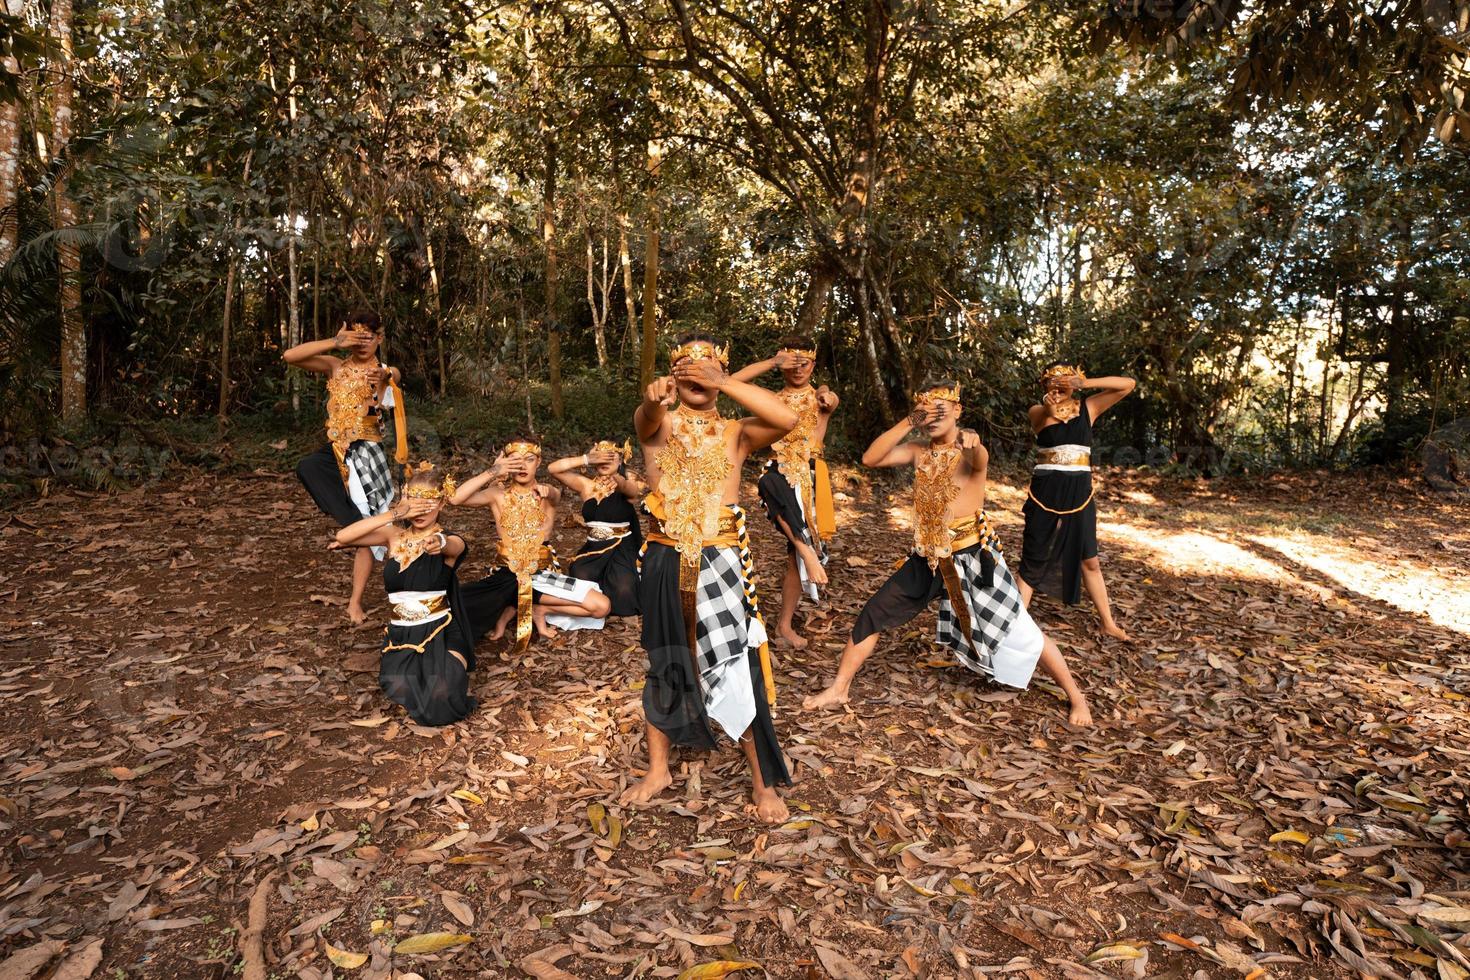 bailarines balineses con trajes dorados y pantalones despojados bailan junto con las hojas marrones muertas en el patio foto